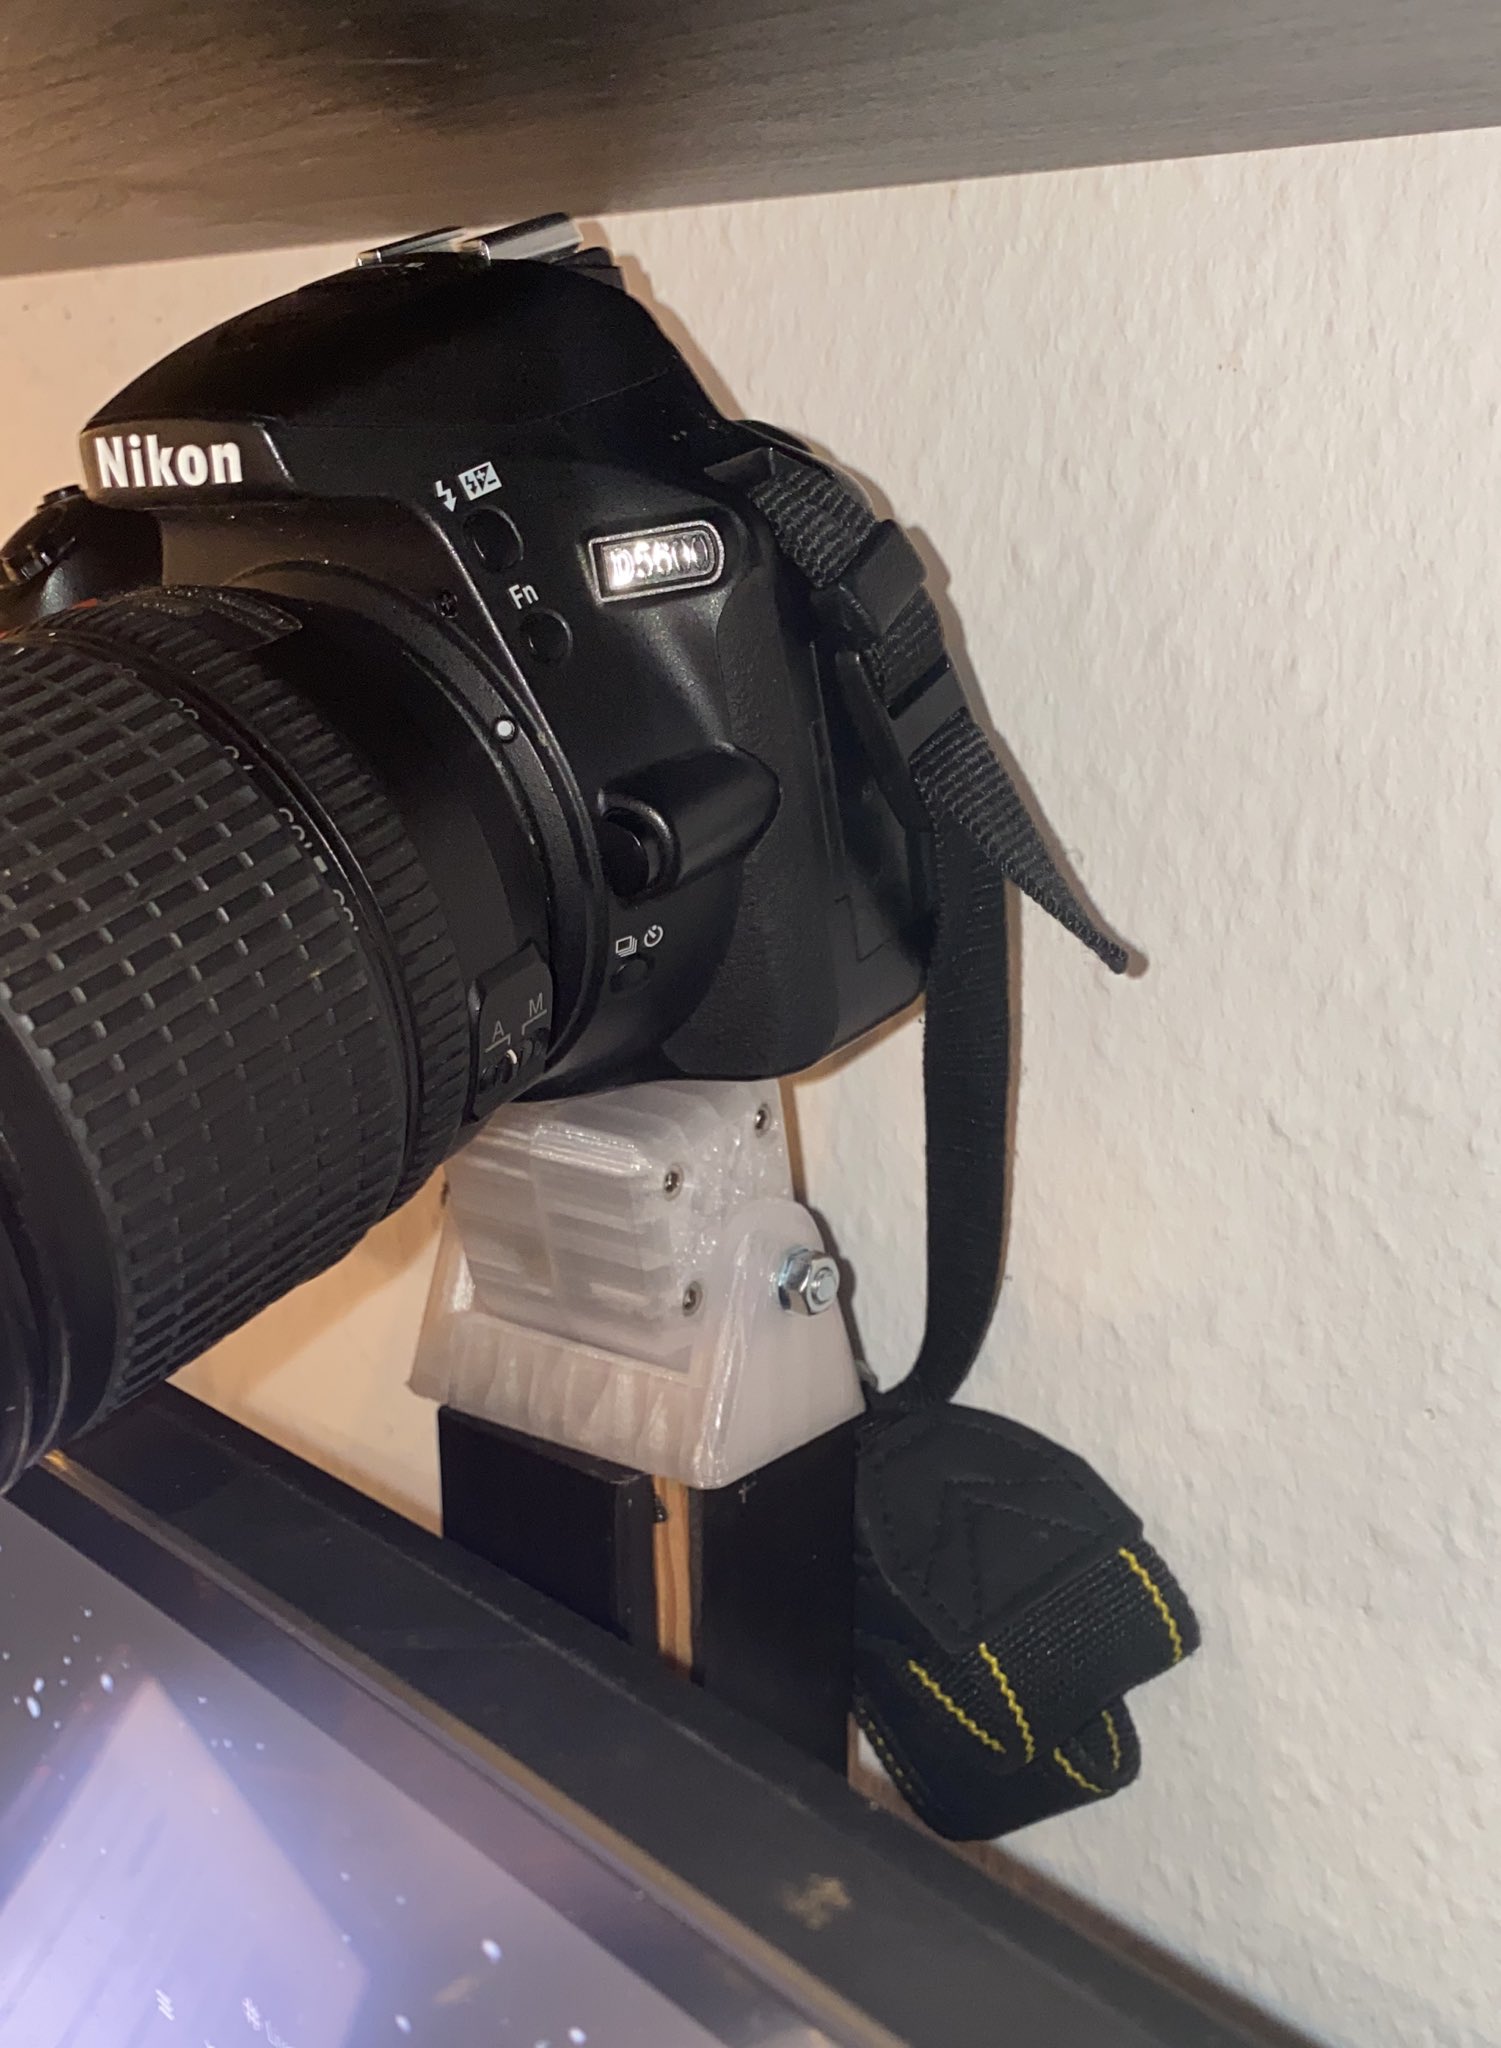 DSLR webcam mount/holder